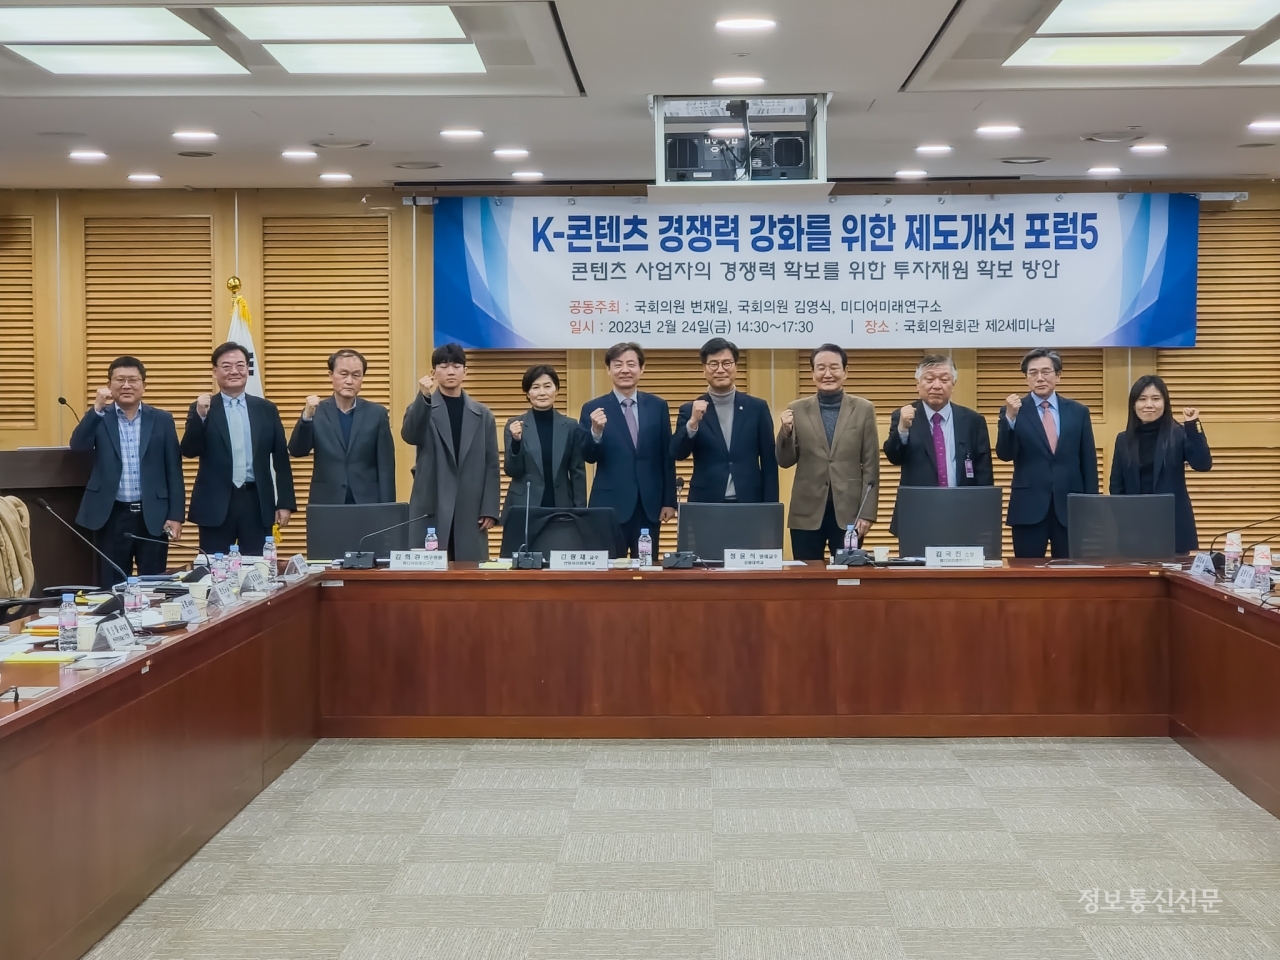 24일 서울 여의도 국회의원회관에서 열린 ‘K-콘텐츠 경쟁력 강화를 위한 제도 개선 포럼5’에서 참석자들이 기념촬영을 했다.